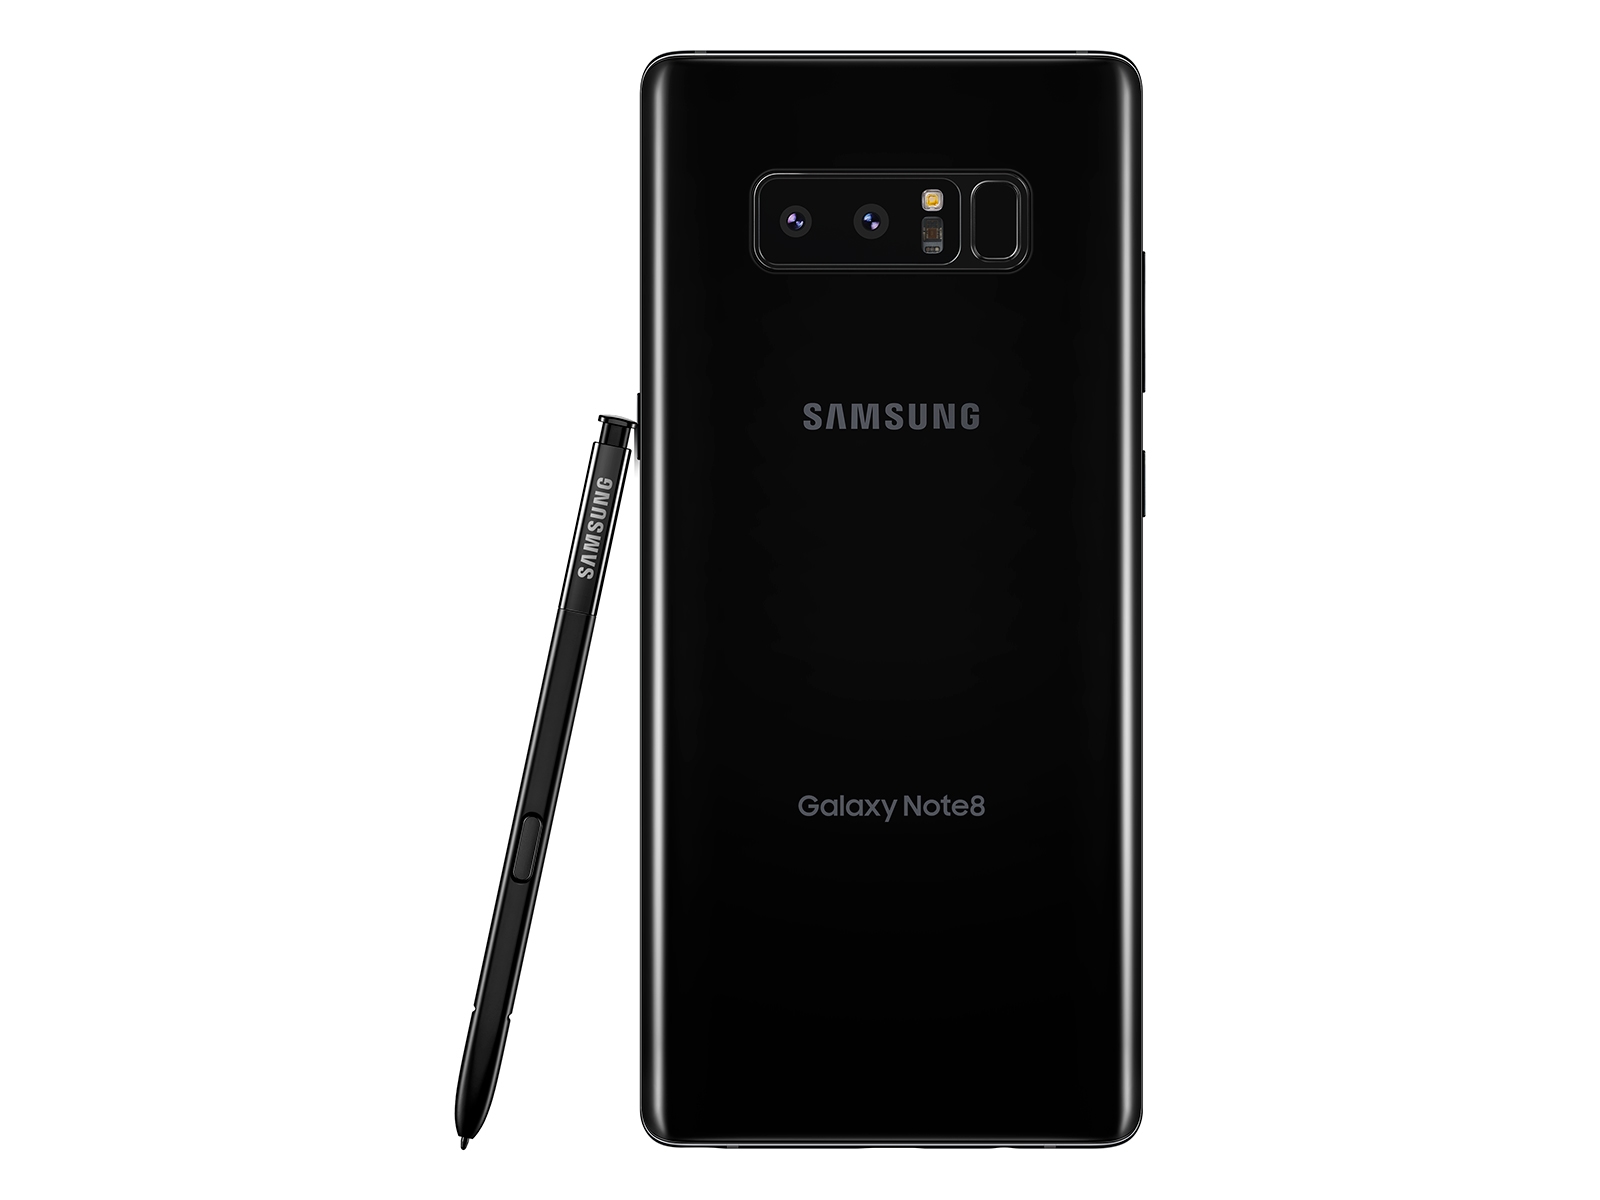 makkelijk te gebruiken Fotoelektrisch Gespecificeerd Samsung Galaxy Note8 64GB (T-Mobile) Midnight Black: SM-N950UZKATMB |  Samsung US